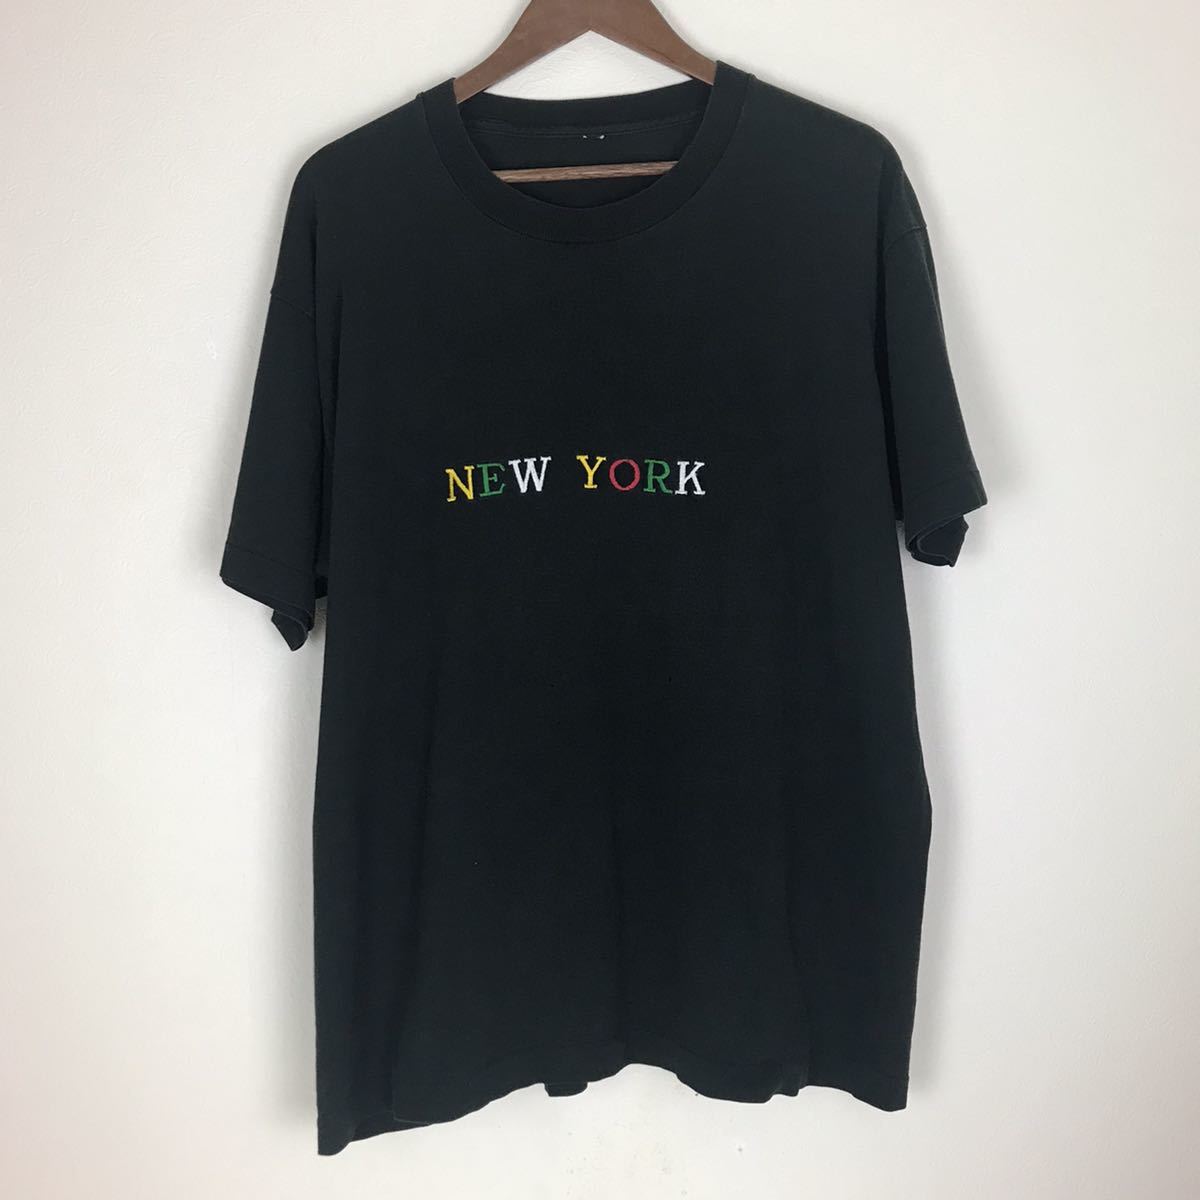 注目ショップ 90s 《送料込み》シングルステッチ vintage 古着 アメカジ 90年代 NY ニューヨーク T-sh 刺繍 YORK NEW 文字、ロゴ